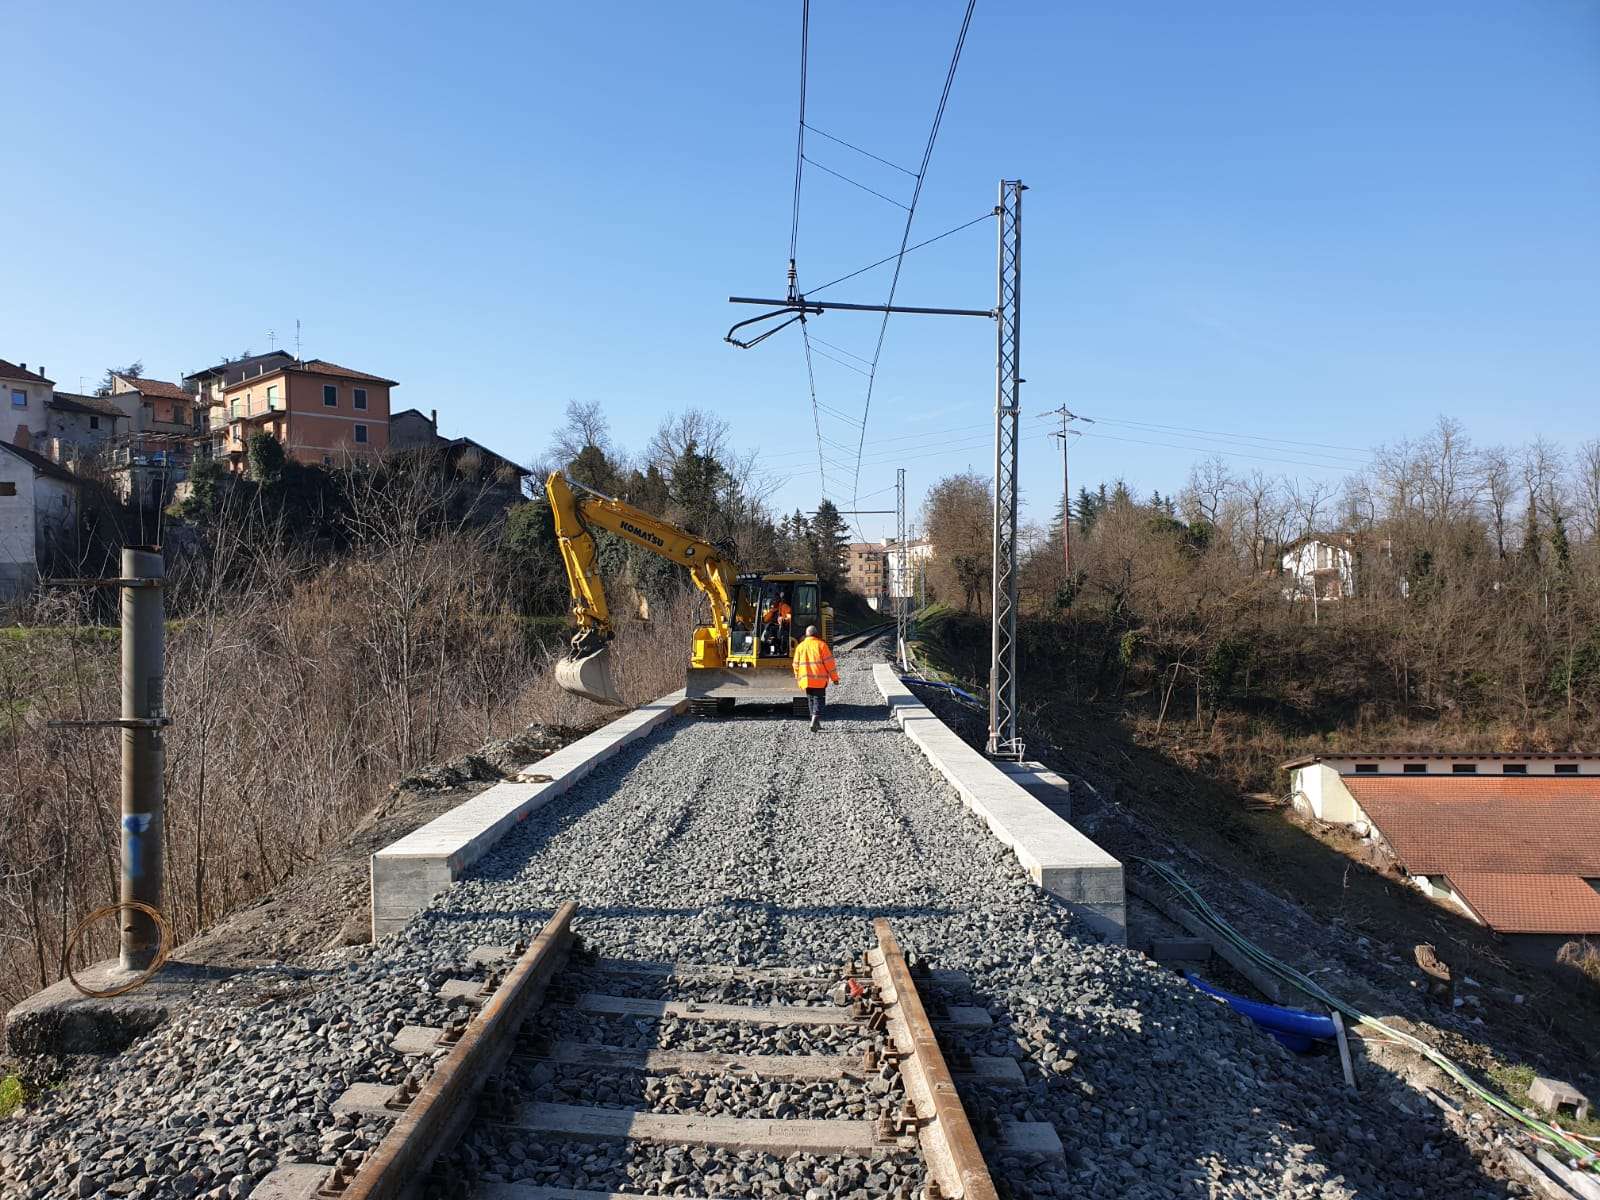 Rete ferroviaria italiana avvierà la prima fase dei lavori di manutenzione straordinaria e potenziamento infrastrutturale programmati sulla Genova-Ovada-Acqui Terme.